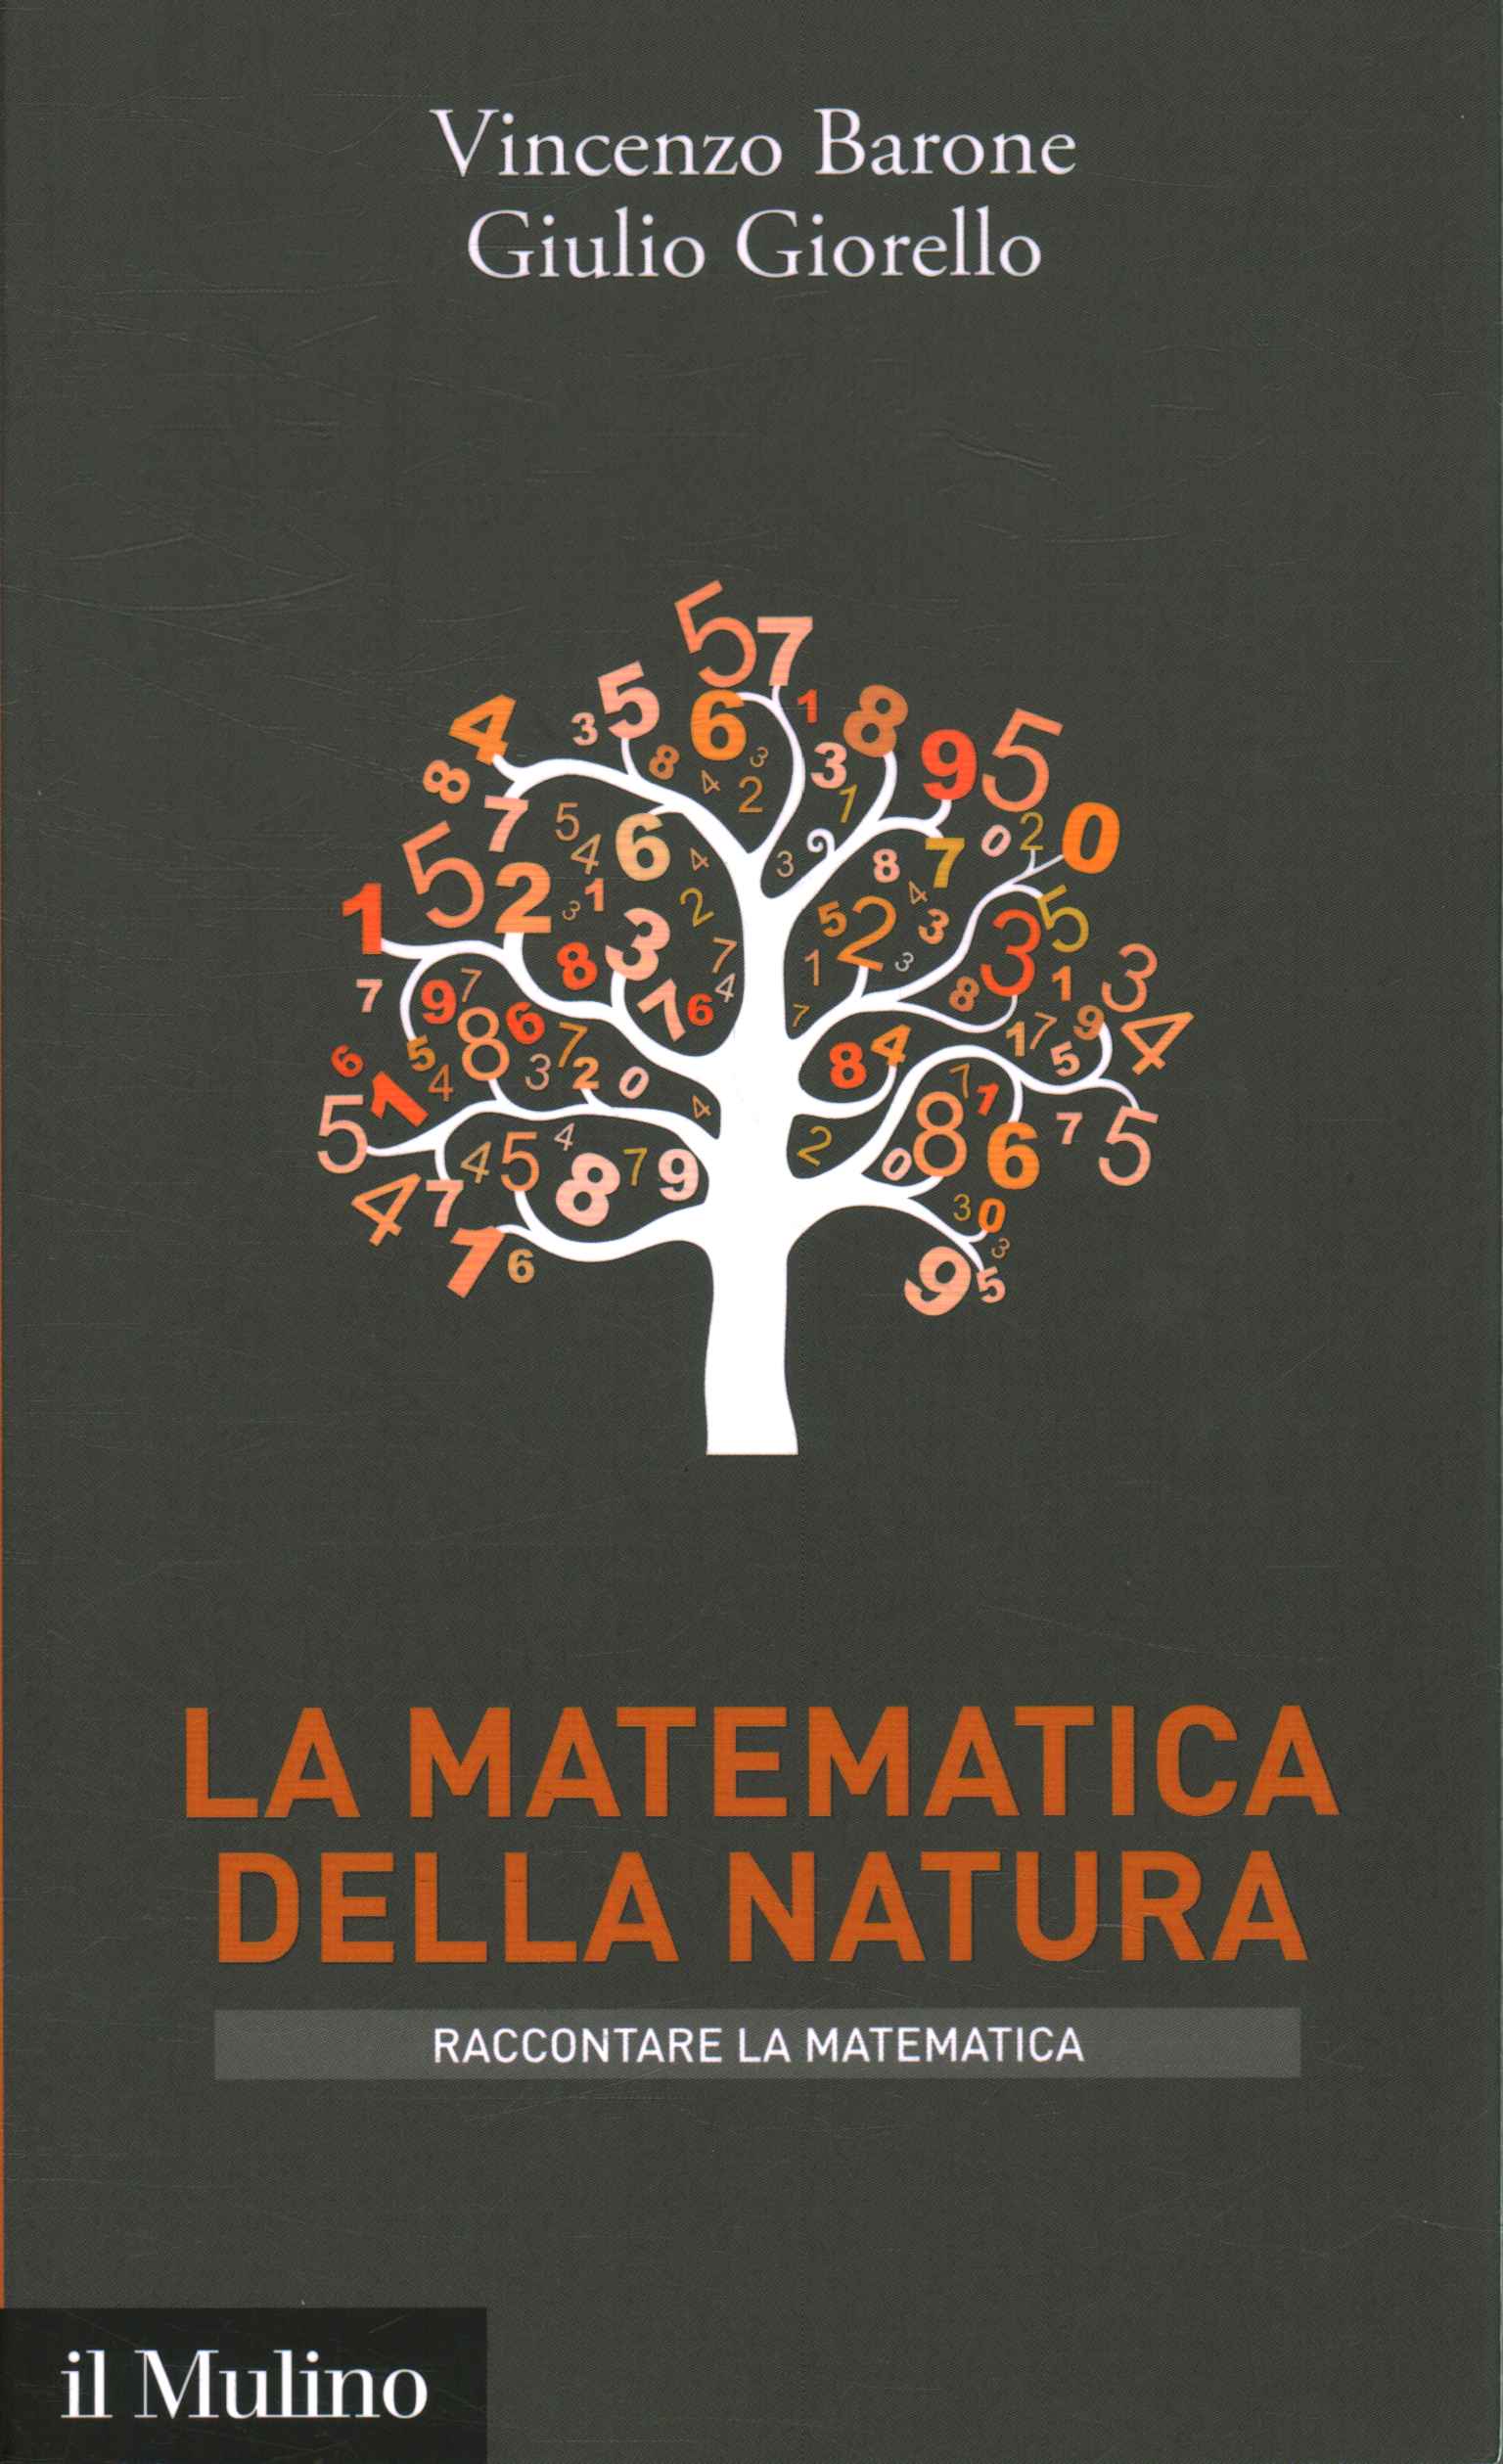 The mathematics of nature